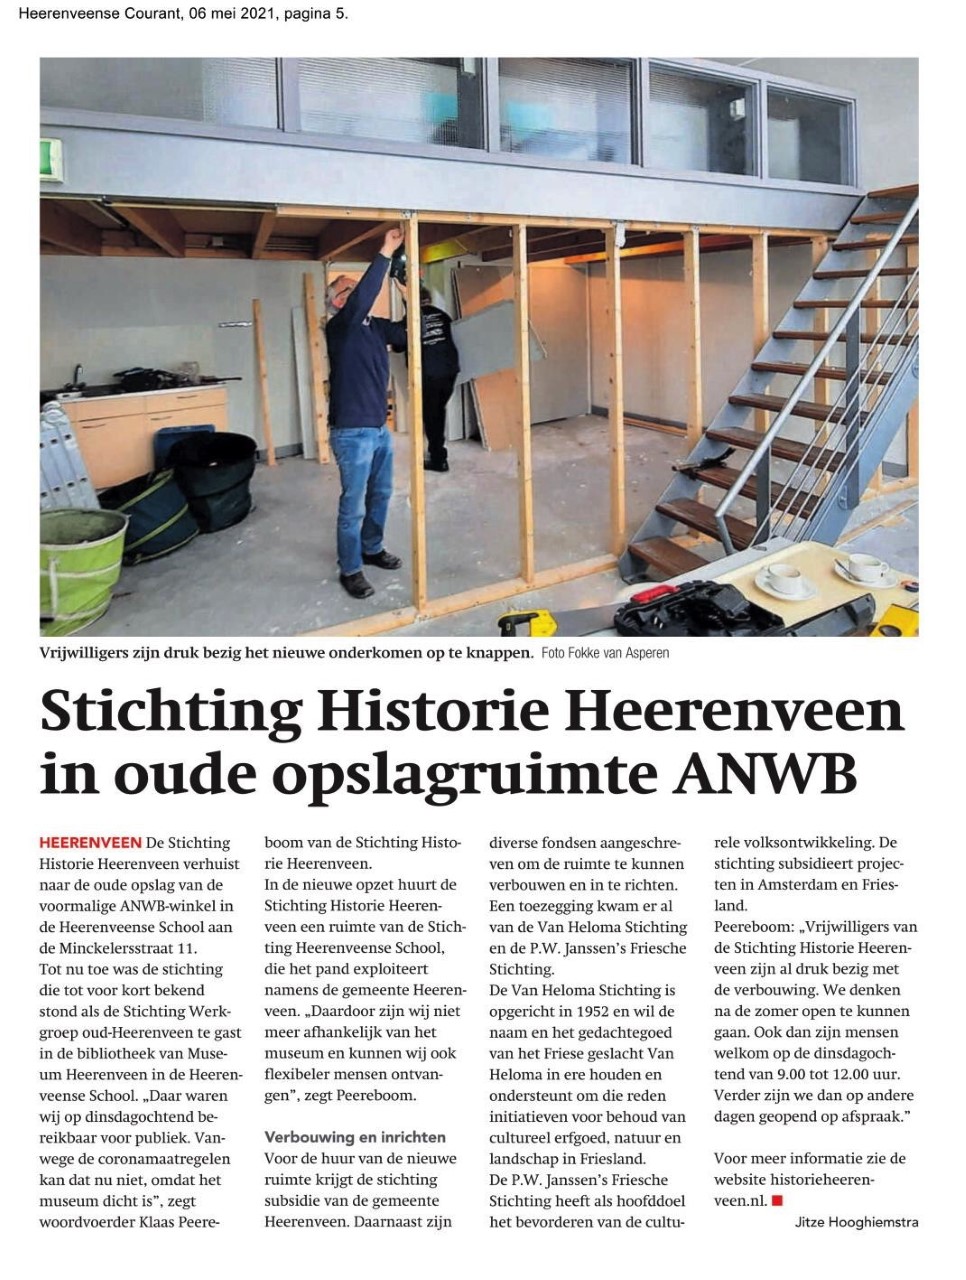 9950 2021 05 06 Stichting Historie Heerenveen in oude opslagruimte ANWB